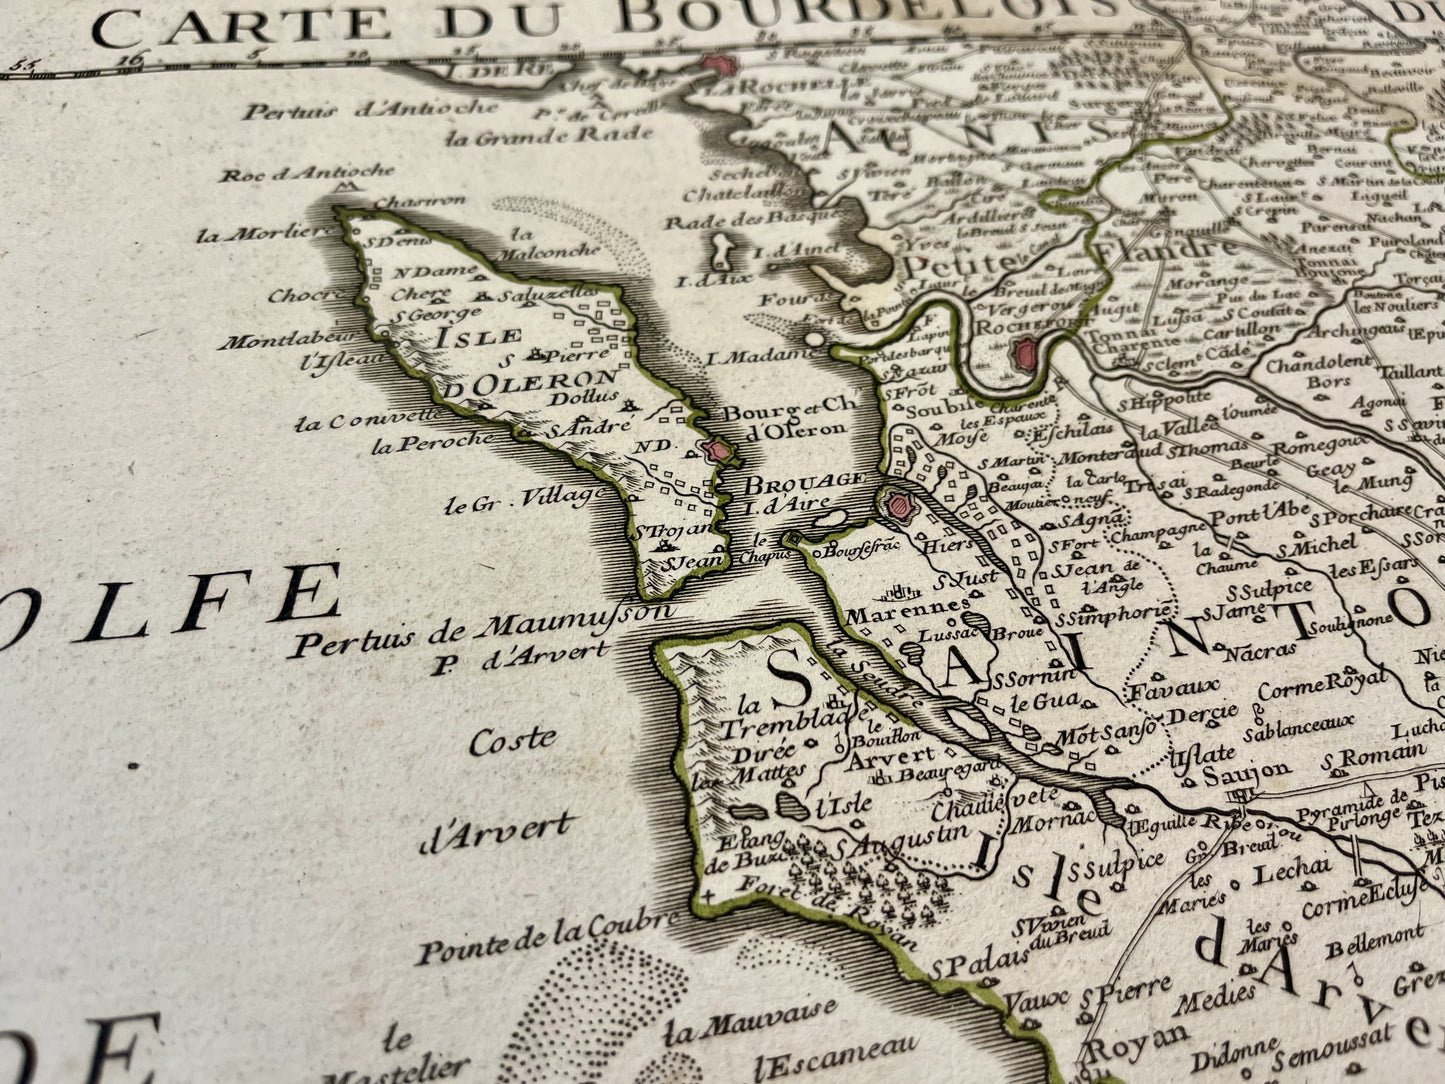 Carte ancienne de Bordeaux et du Périgord avec villes et villages